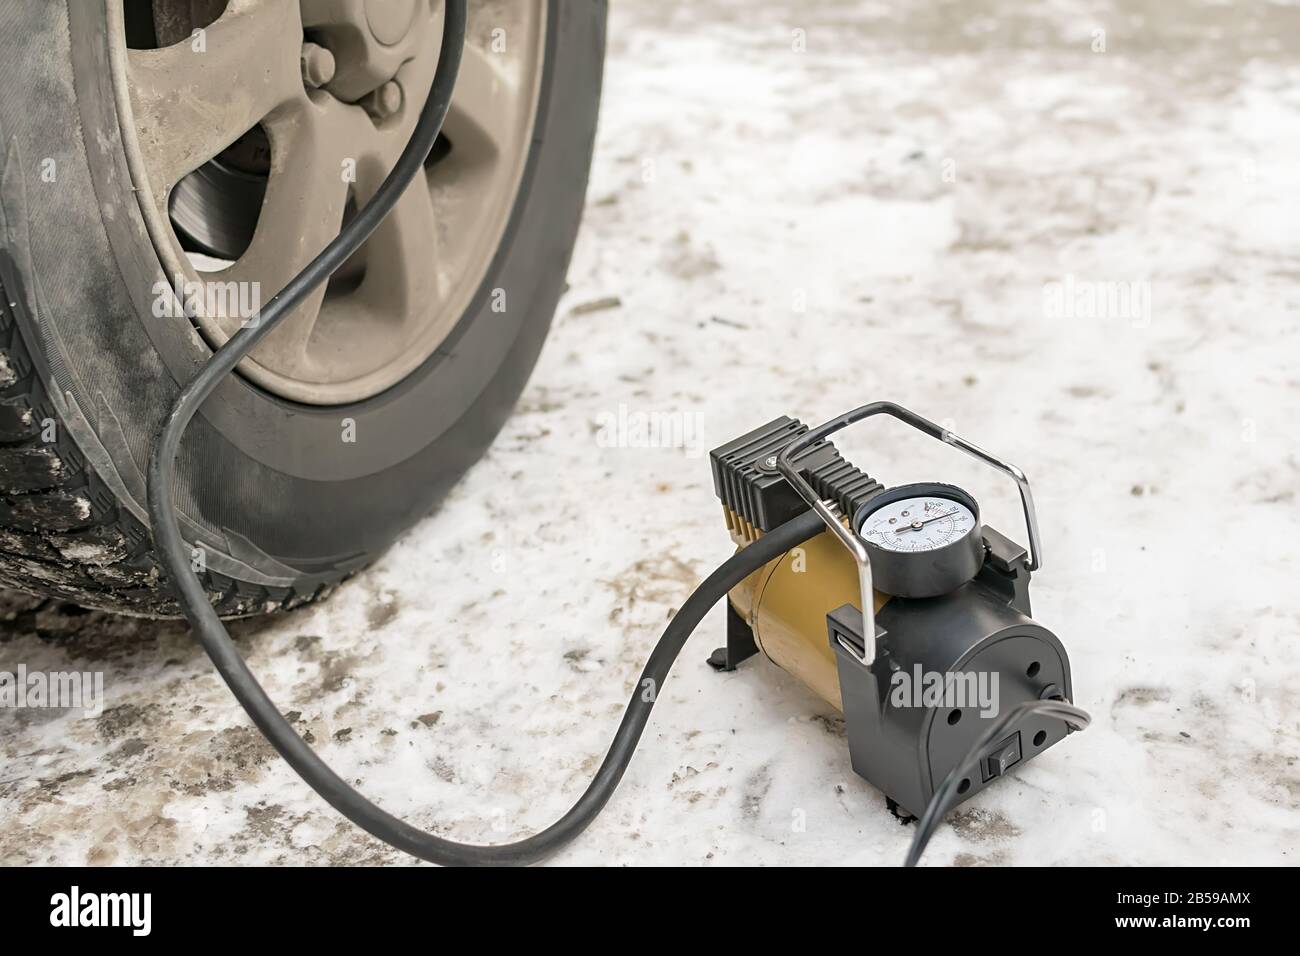 Pumpe, Autokompressor zum Aufpumpen von Reifen mit Luft steht im